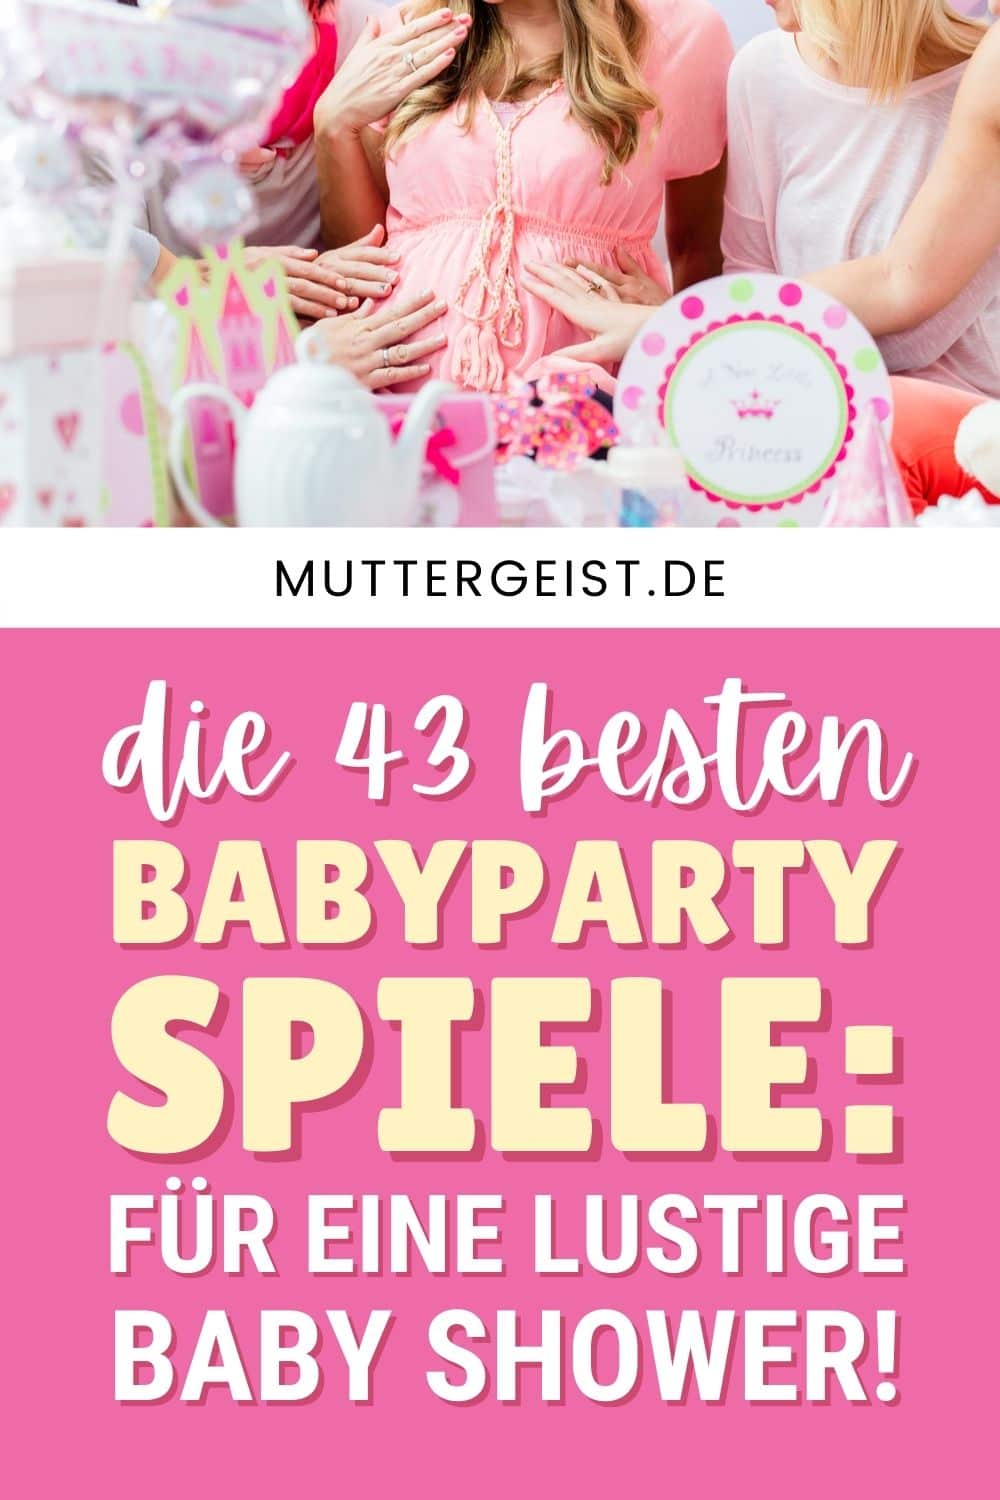 Die 43 Besten Babyparty Spiele Für Eine Lustige Baby Shower!